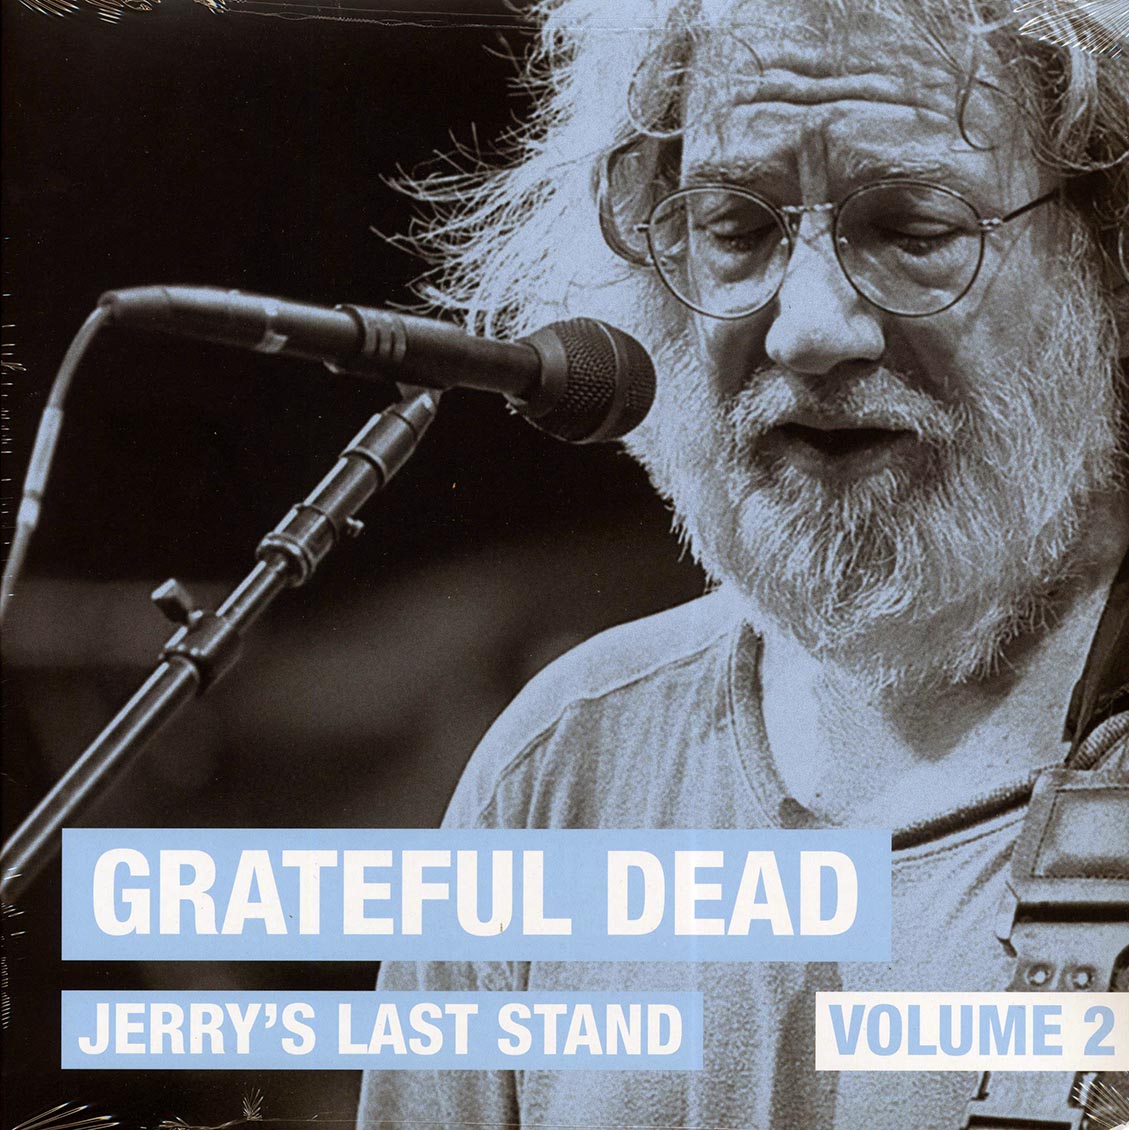 Grateful Dead - Jerry's Last Stand Volume 2: Soldier Field, Chicago, July 9th, 1995 (2xLP) - Vinyl LP